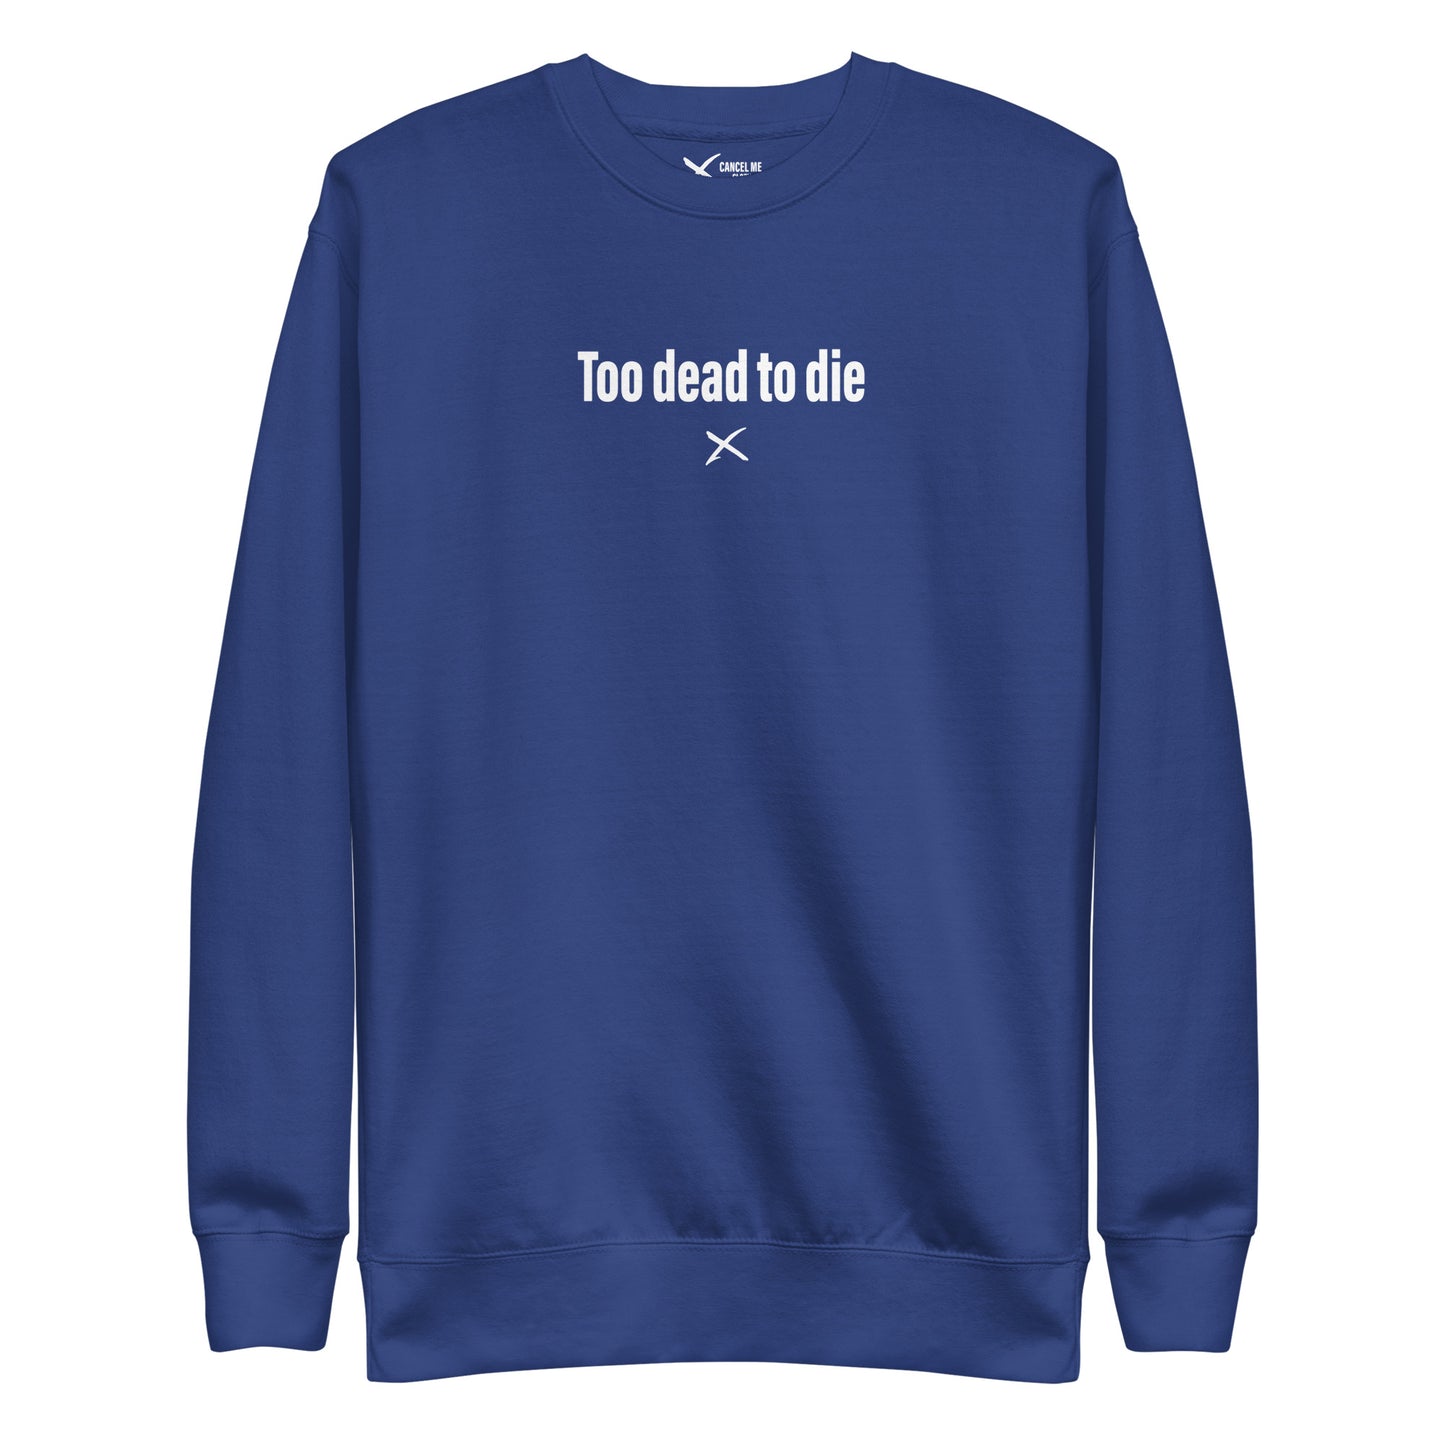 Too dead to die - Sweatshirt